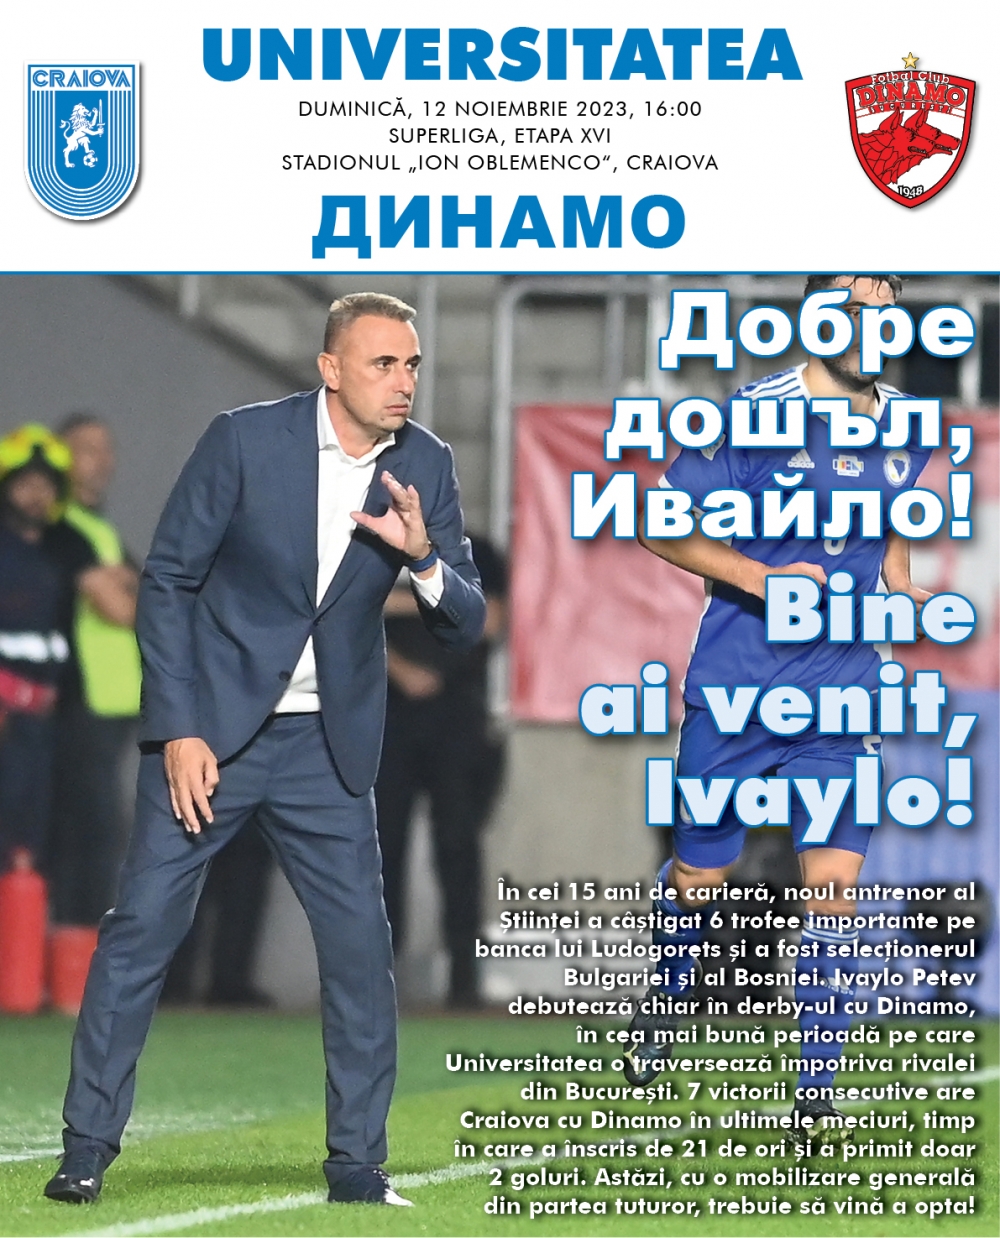 Programul de meci cu Dinamo, în format digital